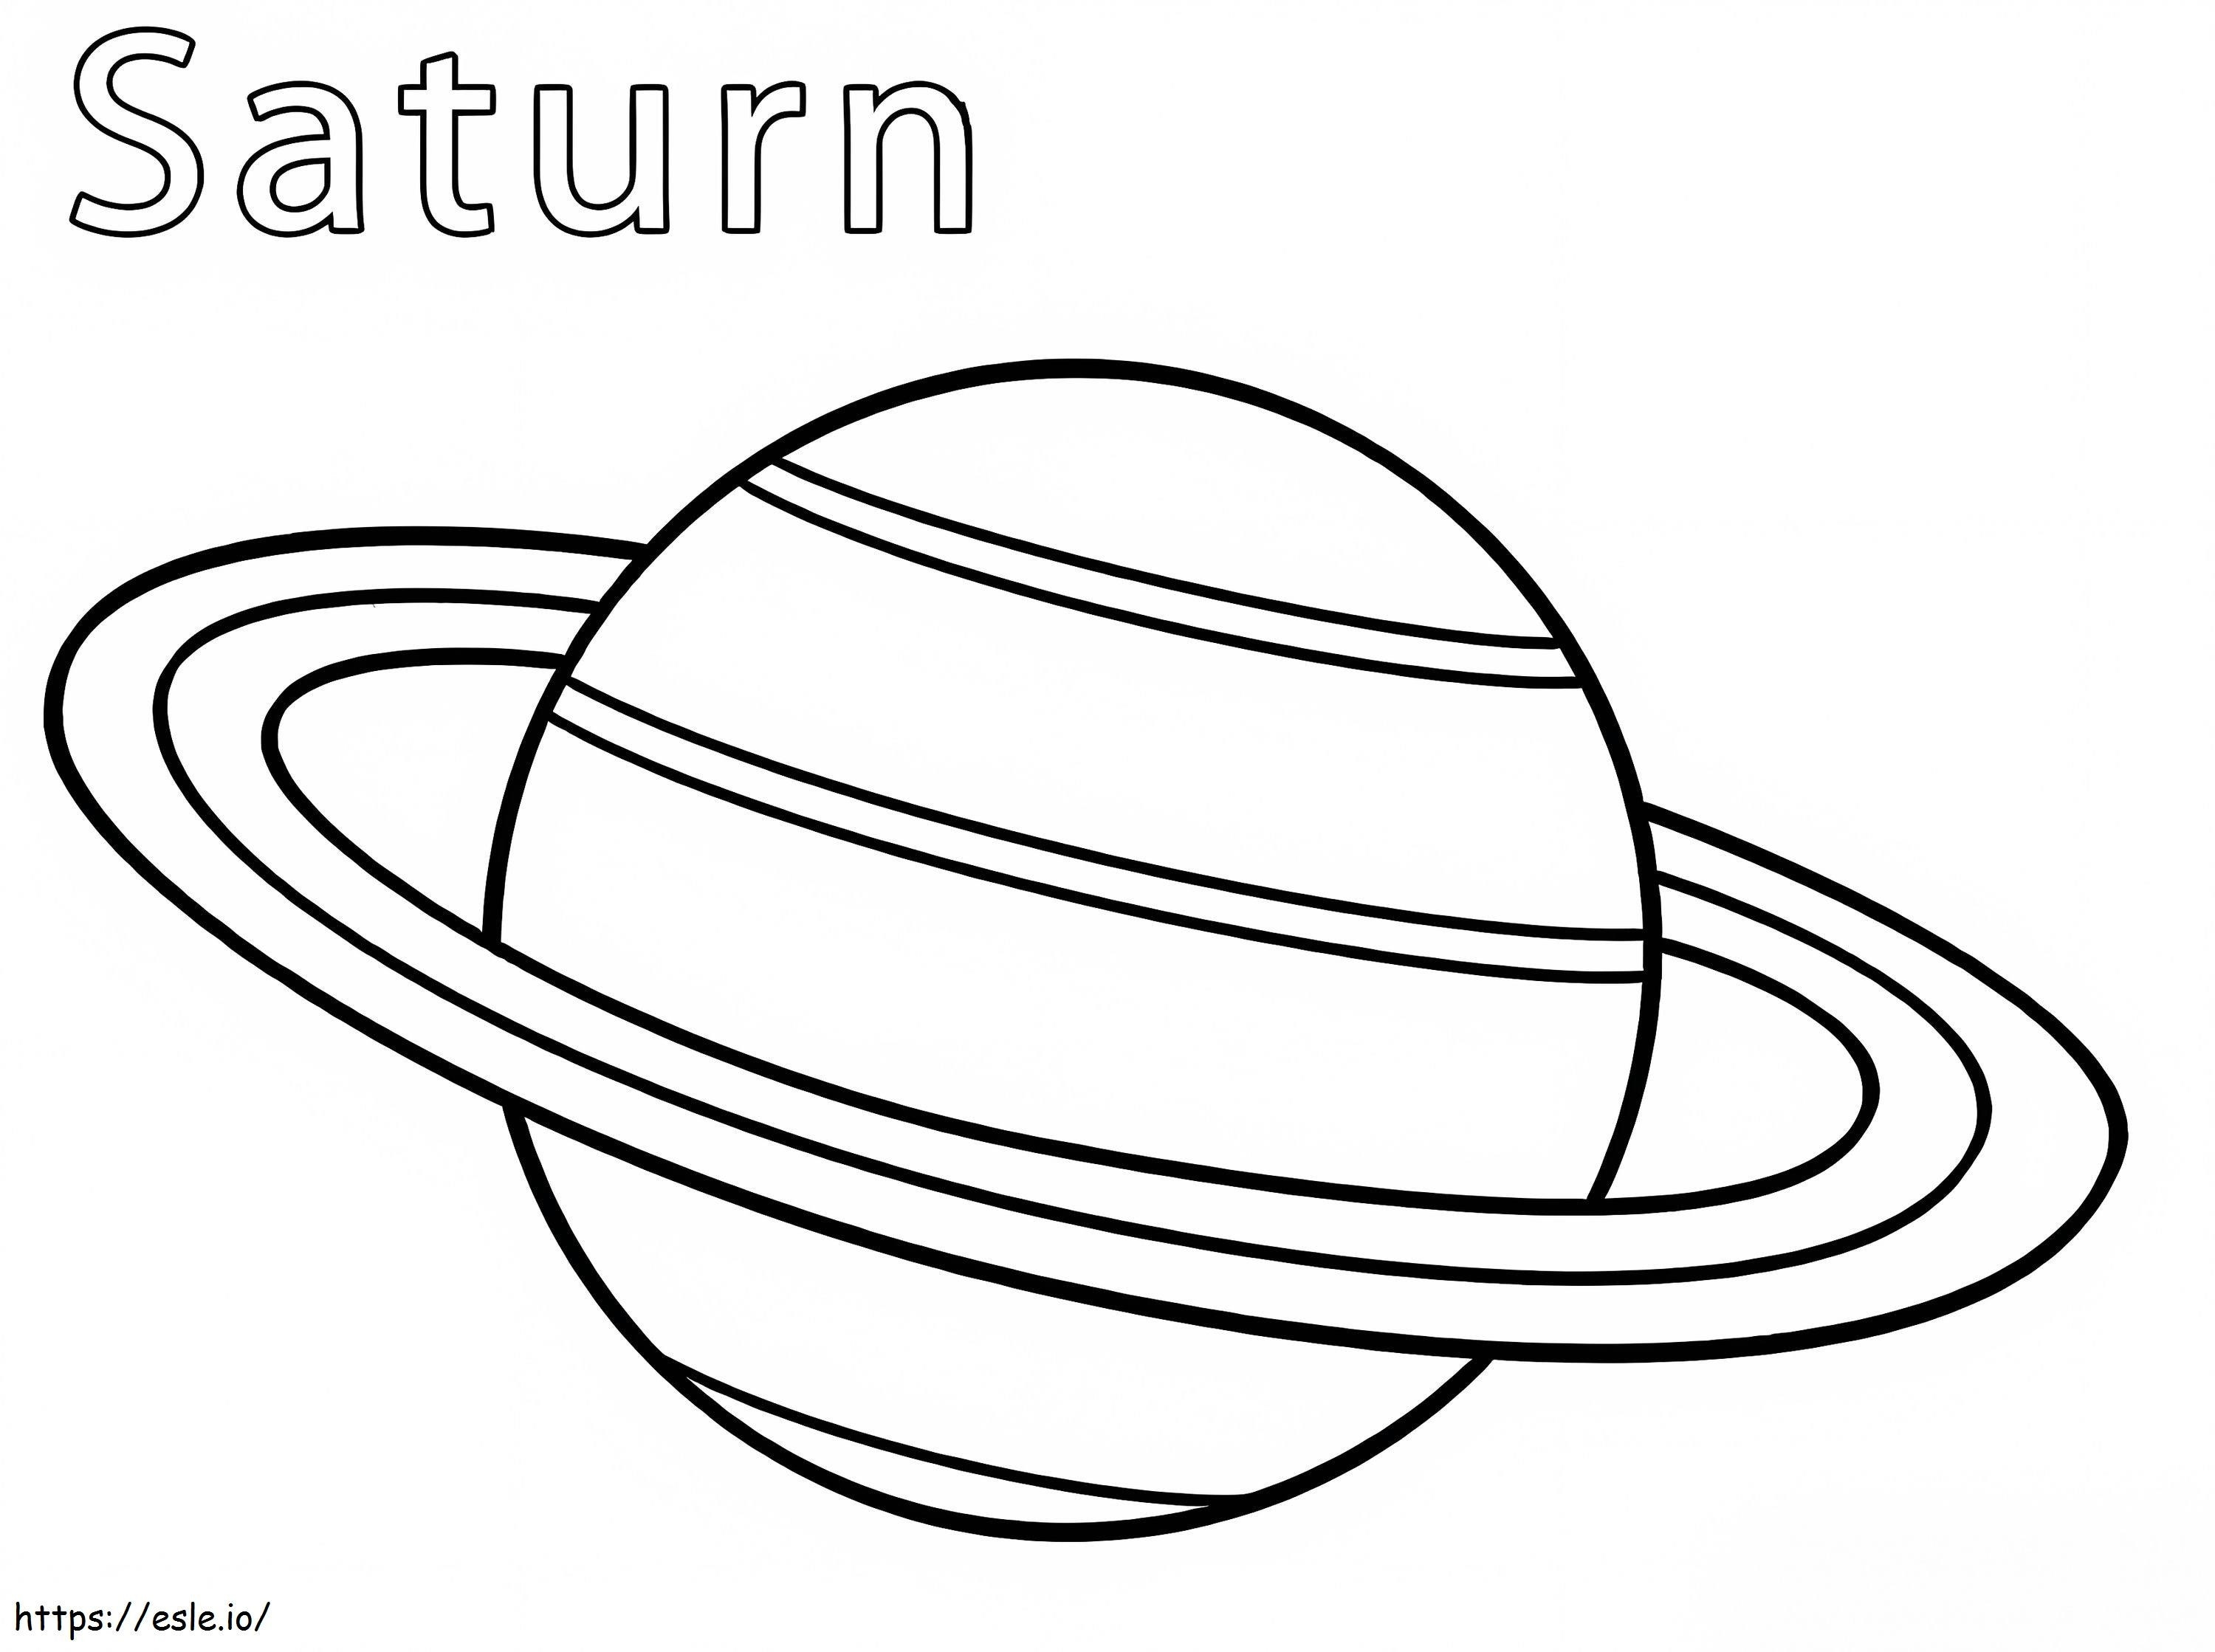 Planeetta Saturnus 2 värityskuva